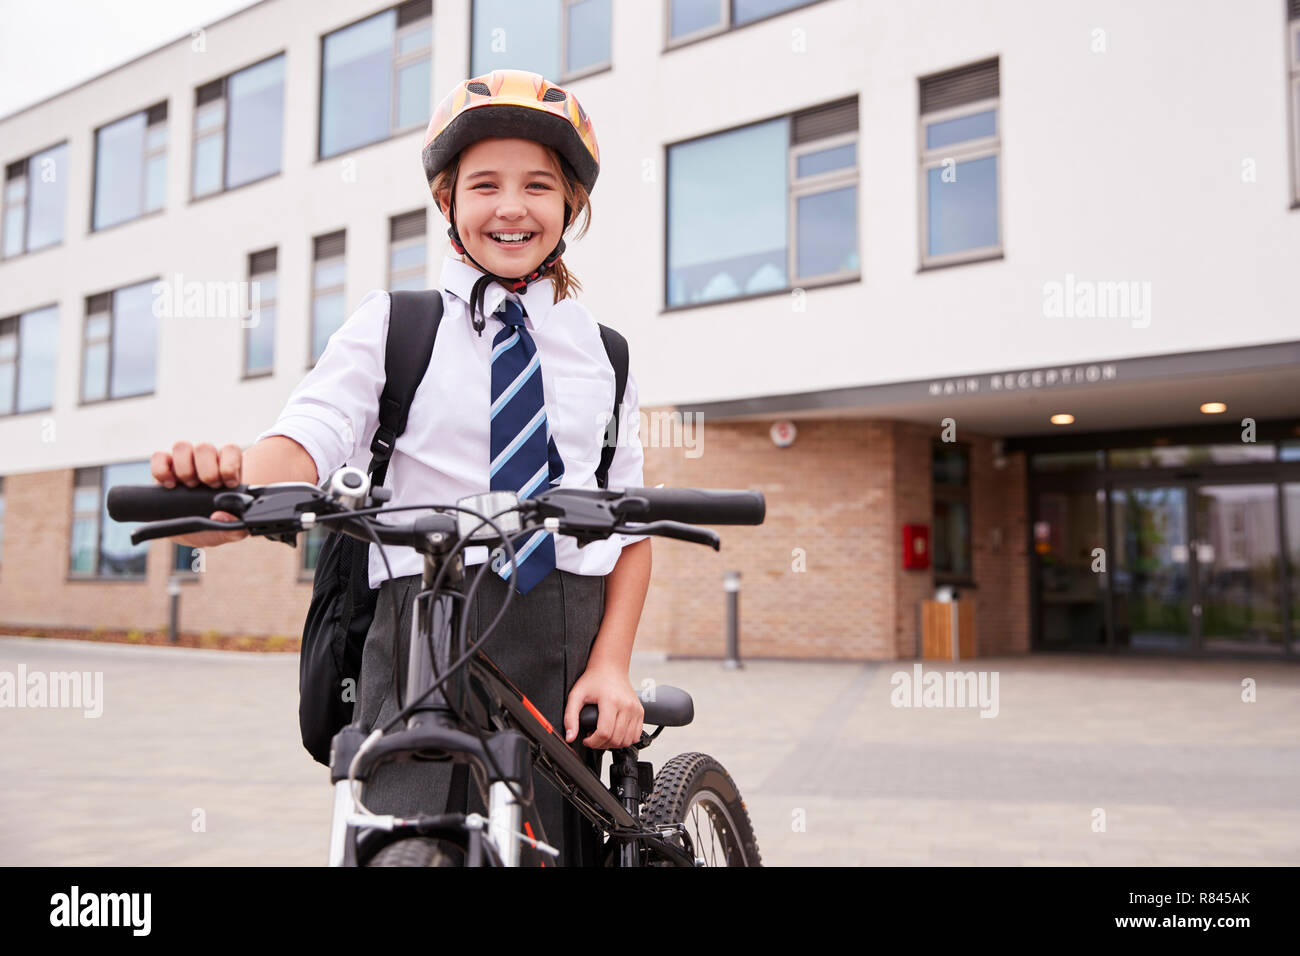 Portrait von weiblichen High School Student trägt Uniform mit Fahrrad ausserhalb der Schule Gebäude Stockfoto